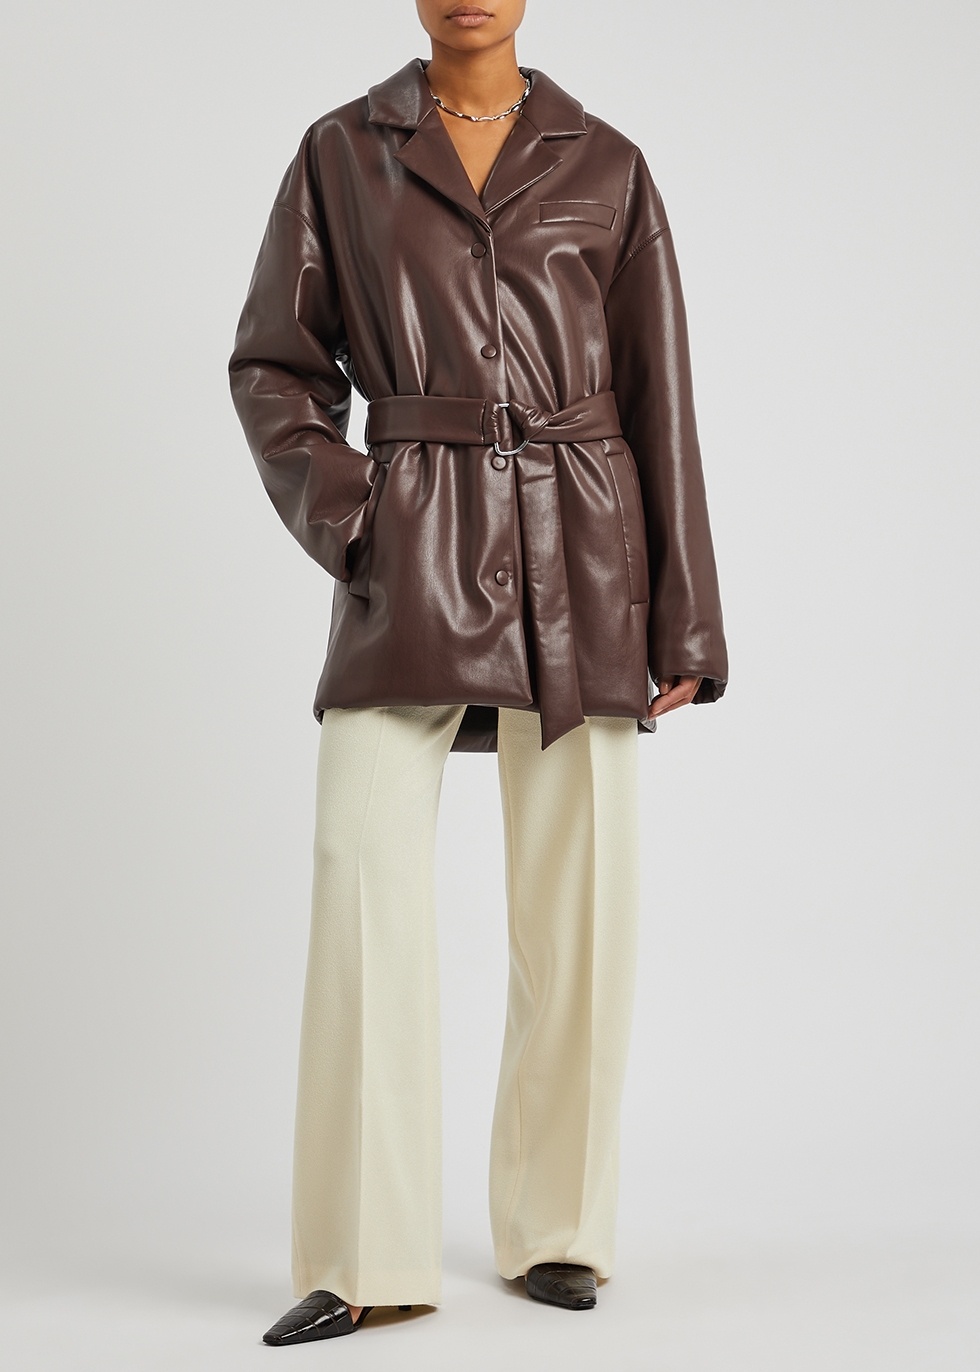 Nanushka LIBAN - Belted OKOBOR™ alt-leather padded jacket - Plum chutney |  REVERSIBLE